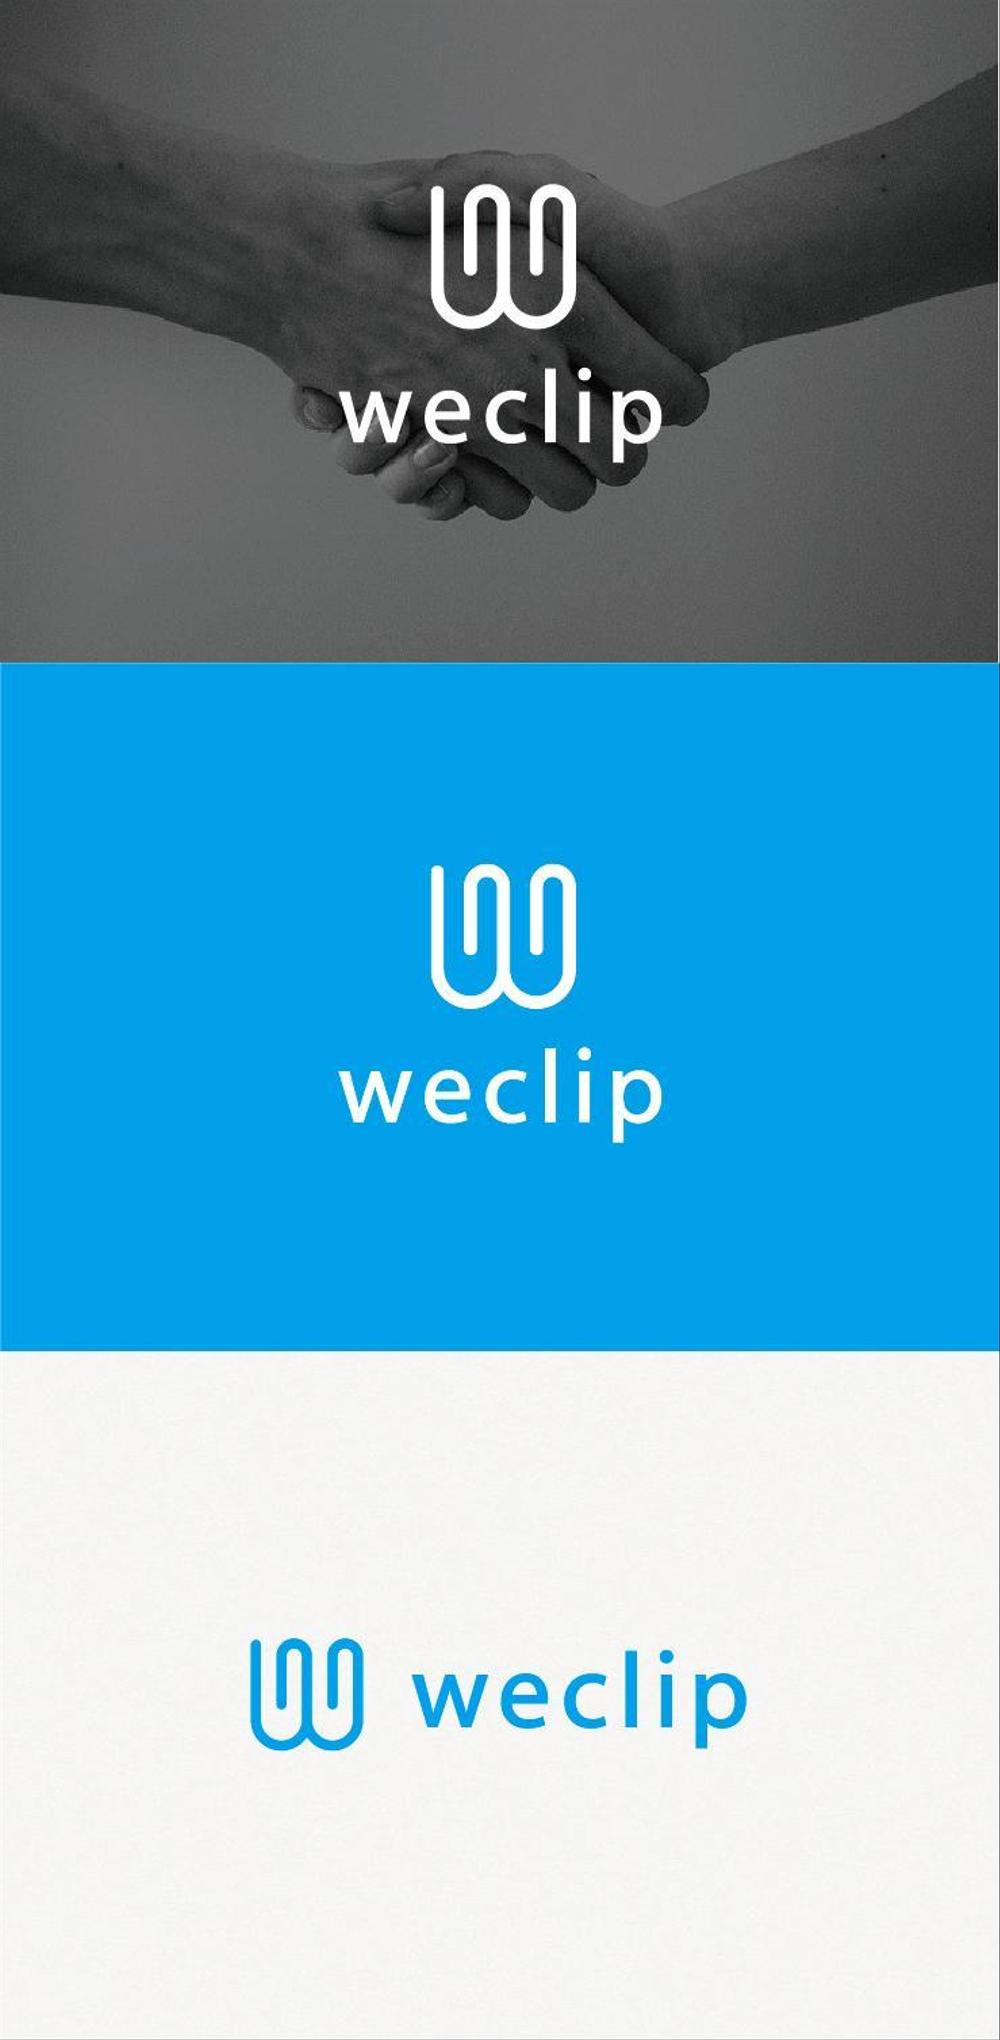 子どもと地域の大人をつなぐ教育(共育)プラットフォームを提供する「weclip」のロゴ